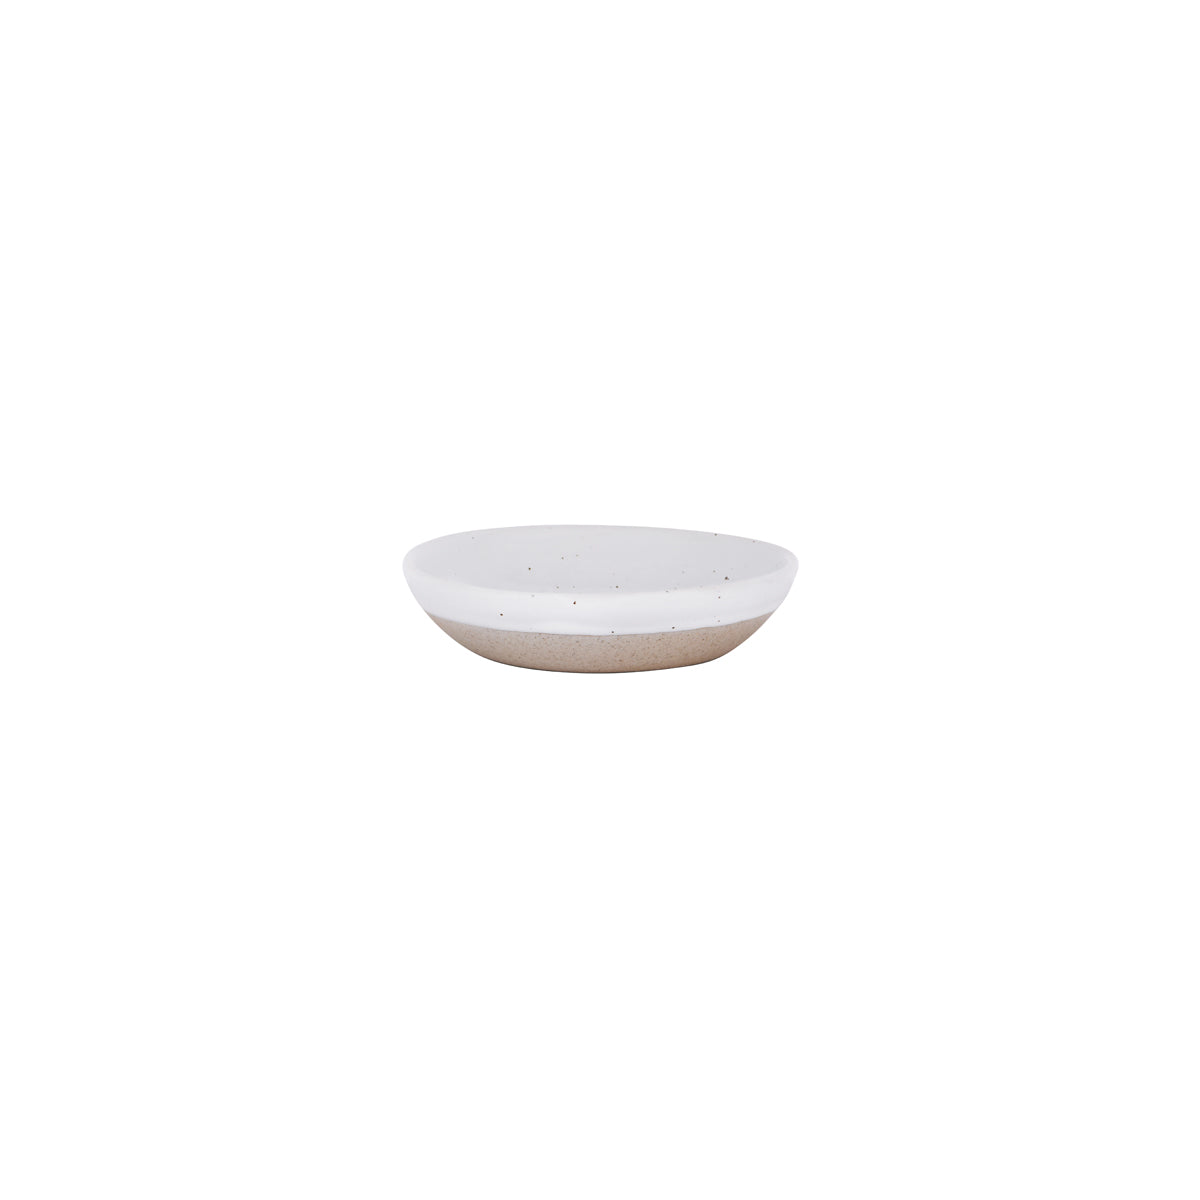 908527 Tablekraft Soho Round Coupe Dish White Pebble 103x95x25mm Tomkin Australia Hospitality Supplies